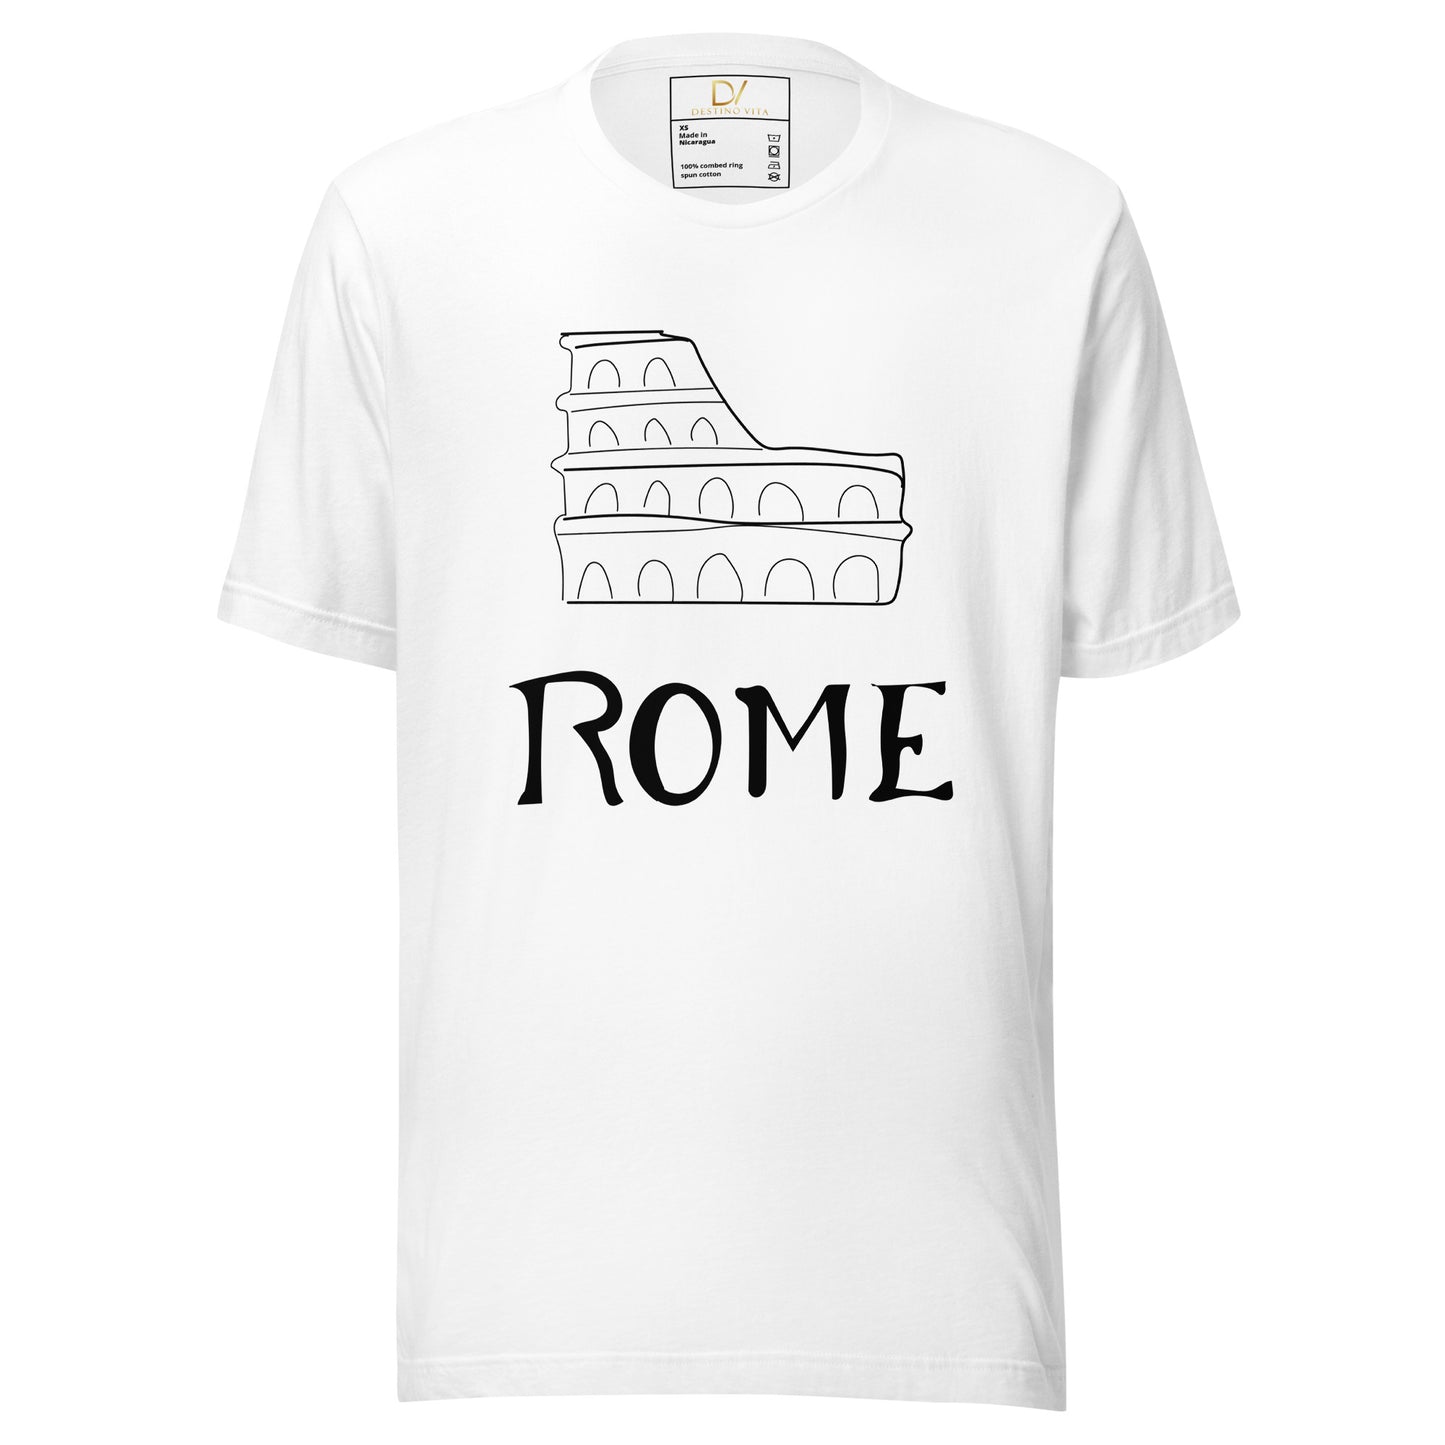 Unisex t-shirt - Rome Architecture